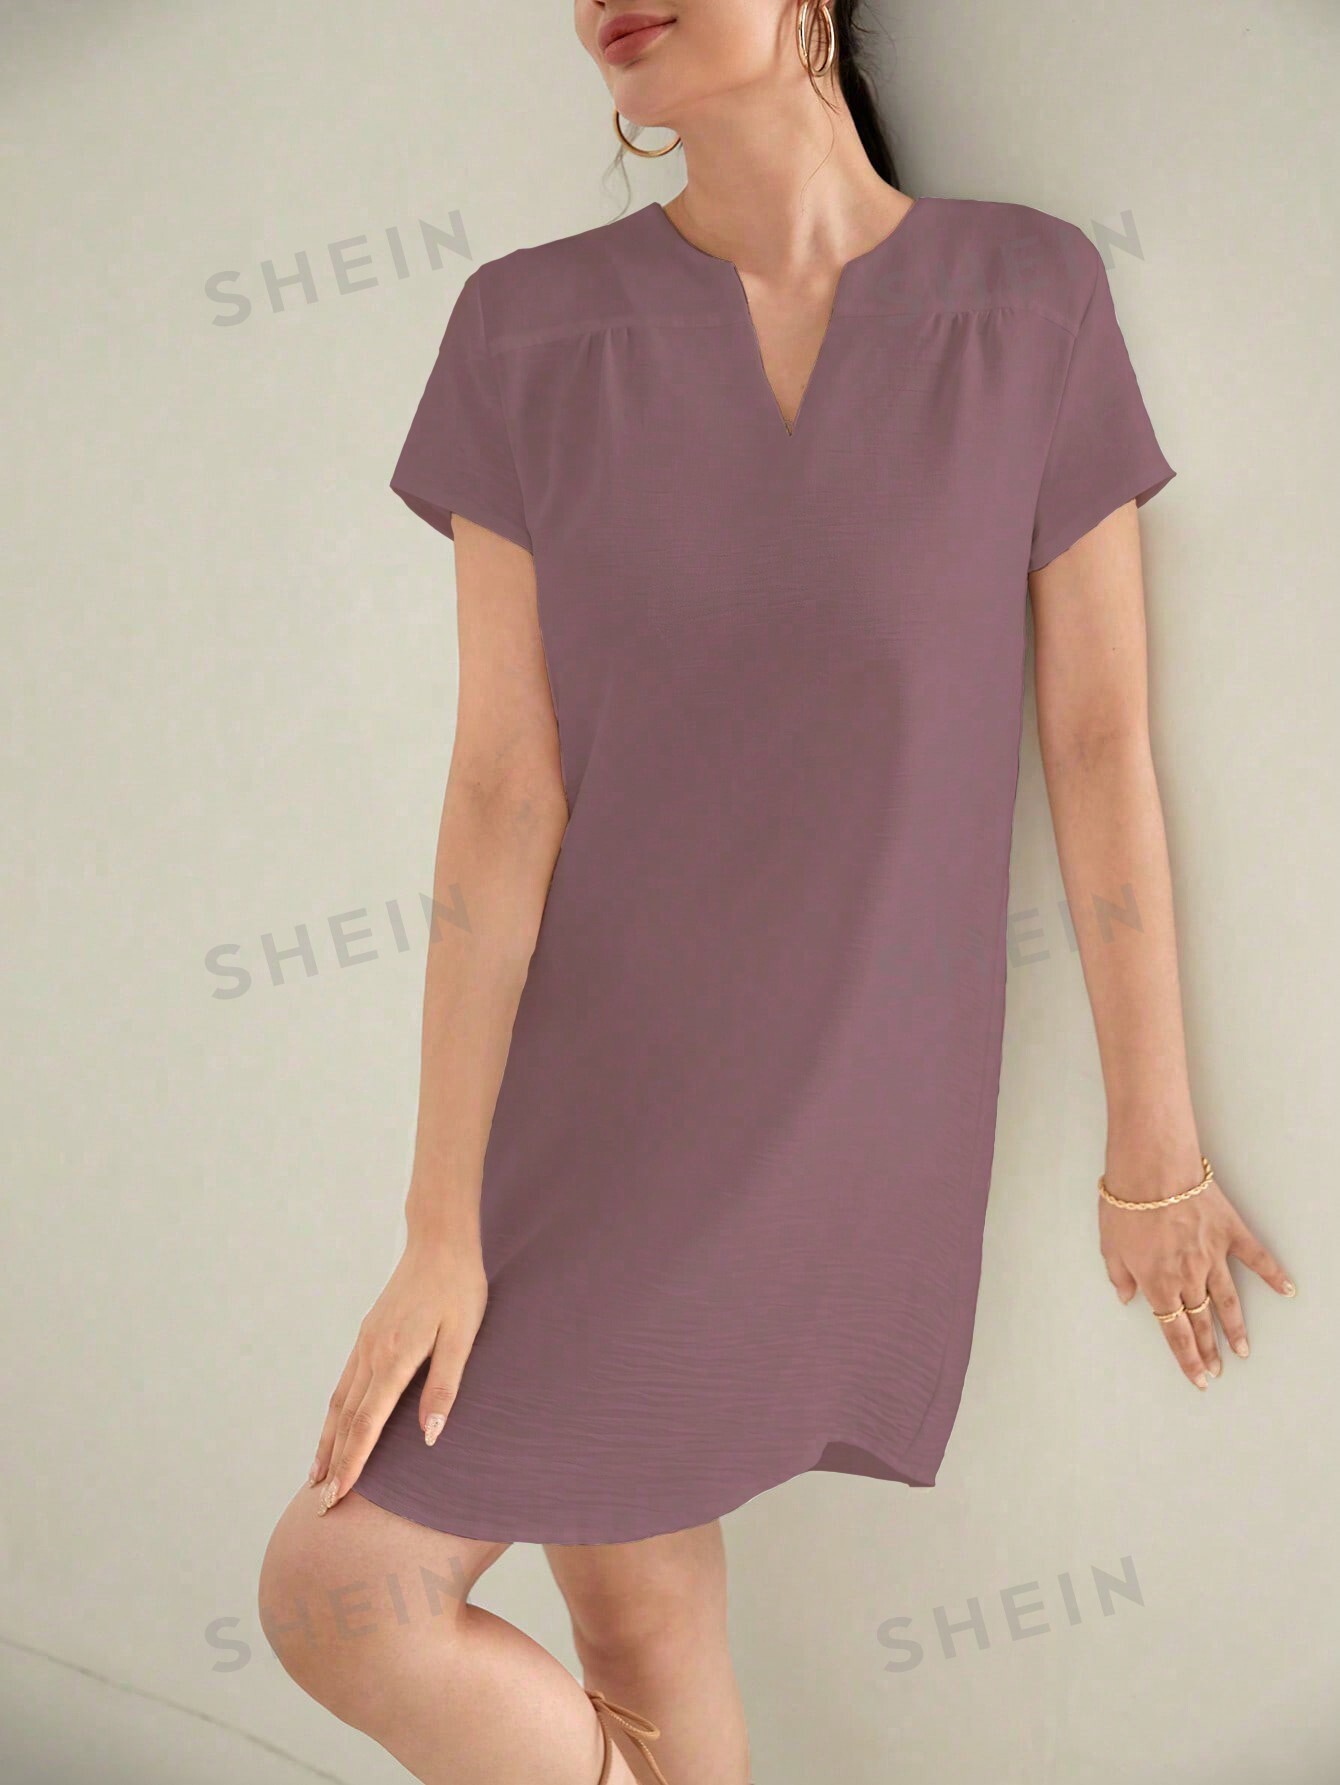 Женское платье трапециевидного силуэта с короткими рукавами и V-образным вырезом, сиреневый фиолетовый медицинский костюм медсестры женский с v образным вырезом и короткими рукавами